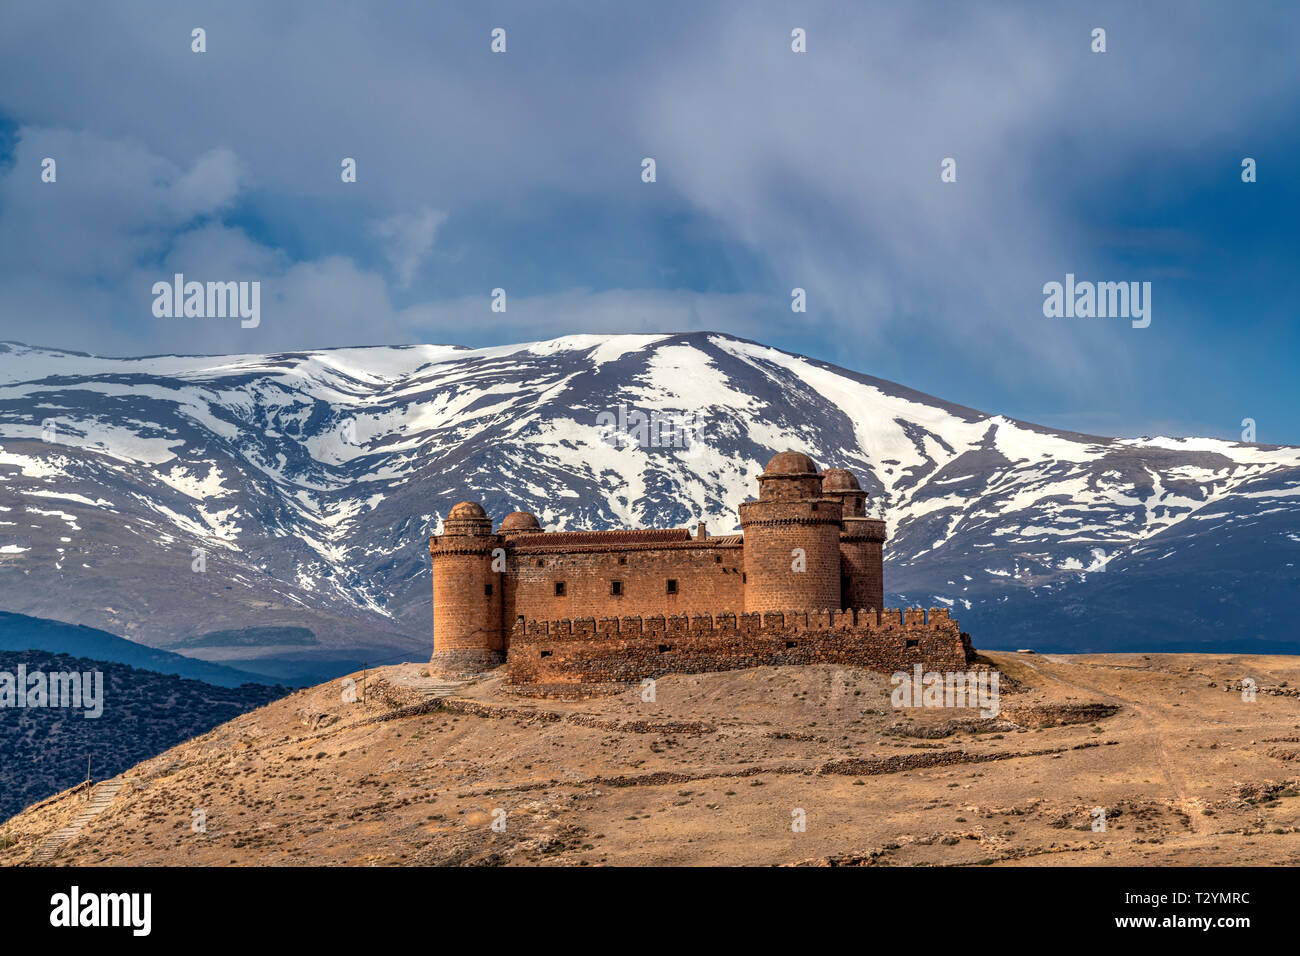 Castillo de la Calahorra castle avec la Sierra Nevada en arrière-plan, La Calahorra, Andalousie, Espagne Banque D'Images